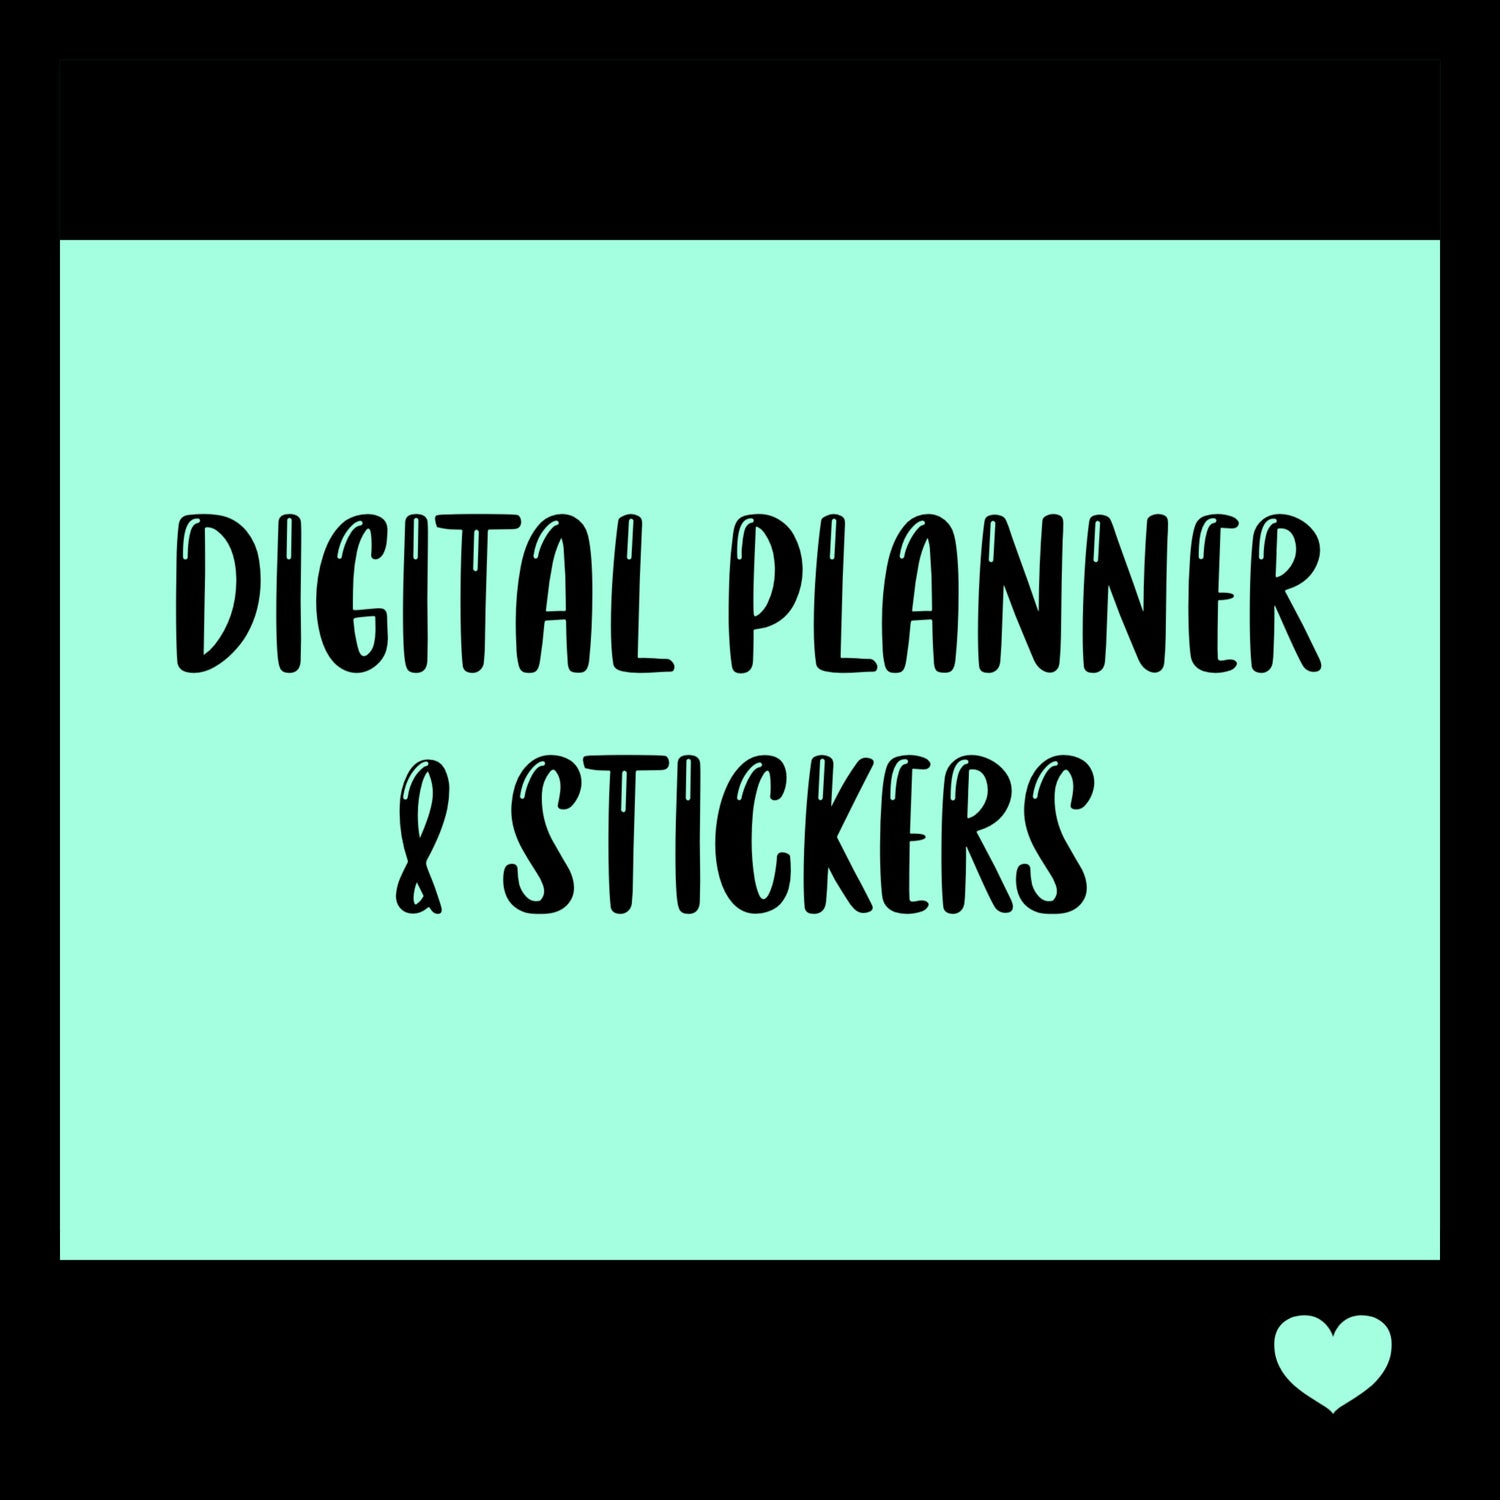 Digitals Planner/ Stickers